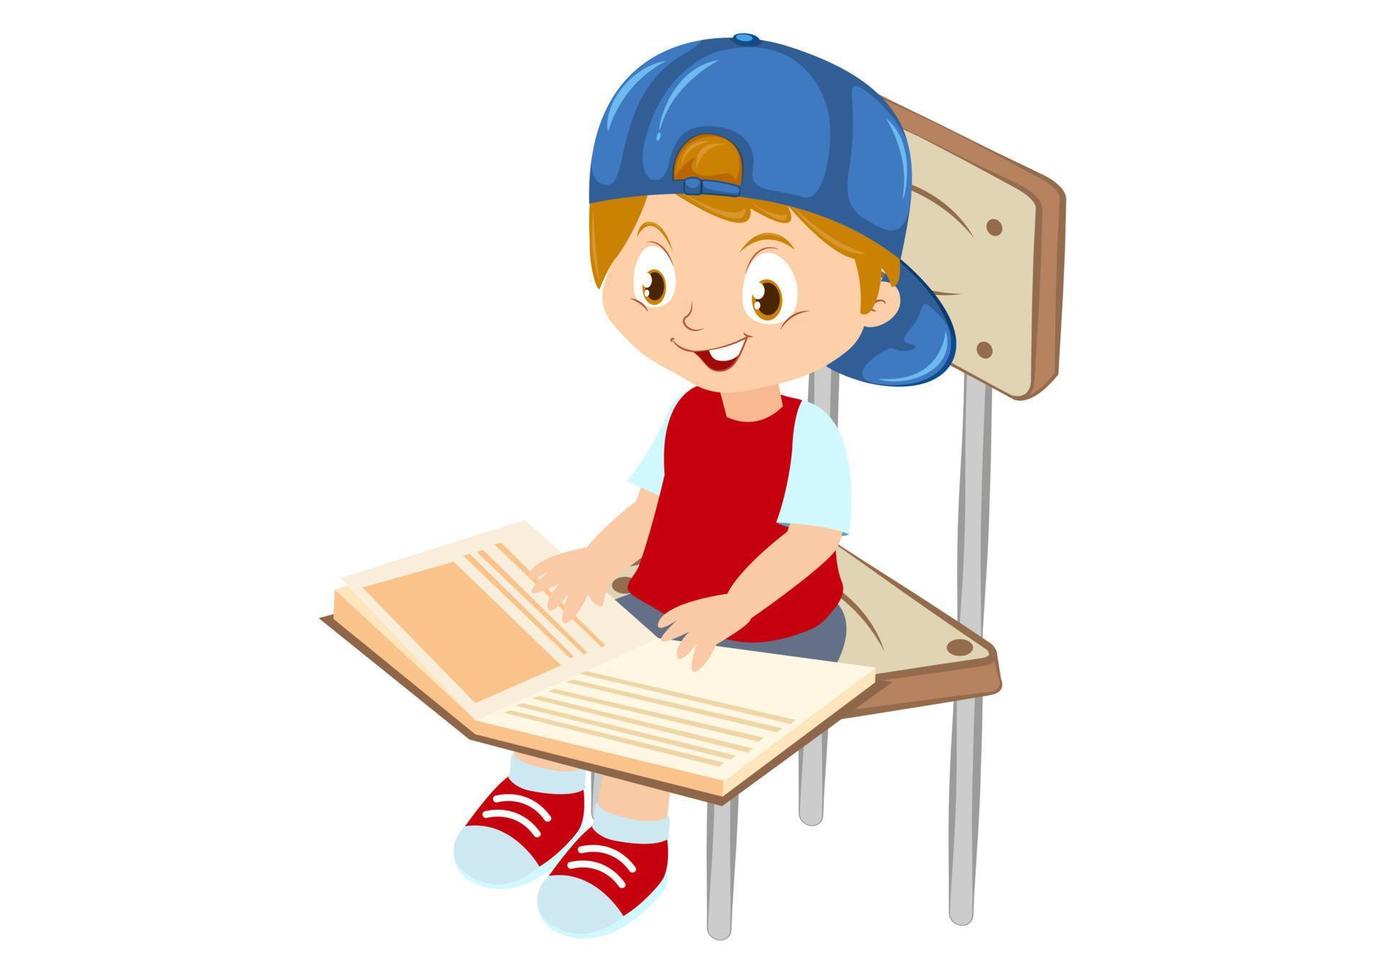 il bambino sta leggendo un libro seduto su una sedia illustrazione vettoriale